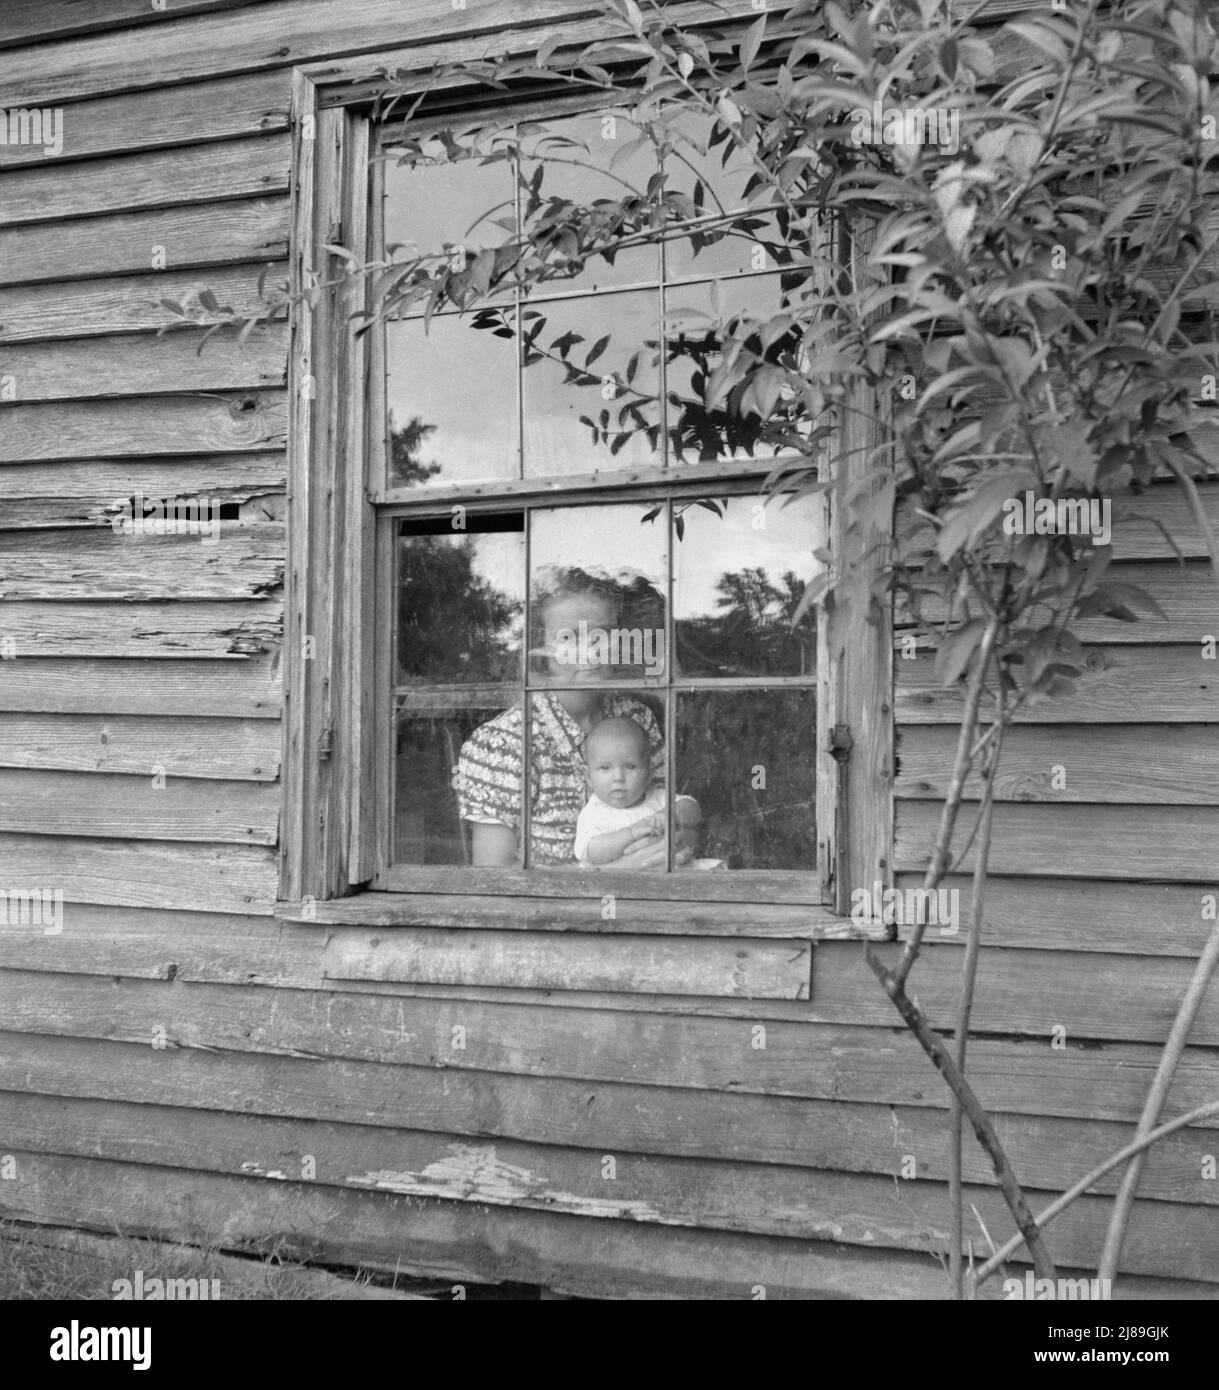 Moglie e bambino di cinque mesi di giovane sharecropper di tabacco (MR Taylor) nella finestra della loro casa. Ha diciassette anni. Il giorno seguente ha aiutato "a mettere in" tabacco alla fattoria. Granville County, Carolina del Nord. Foto Stock